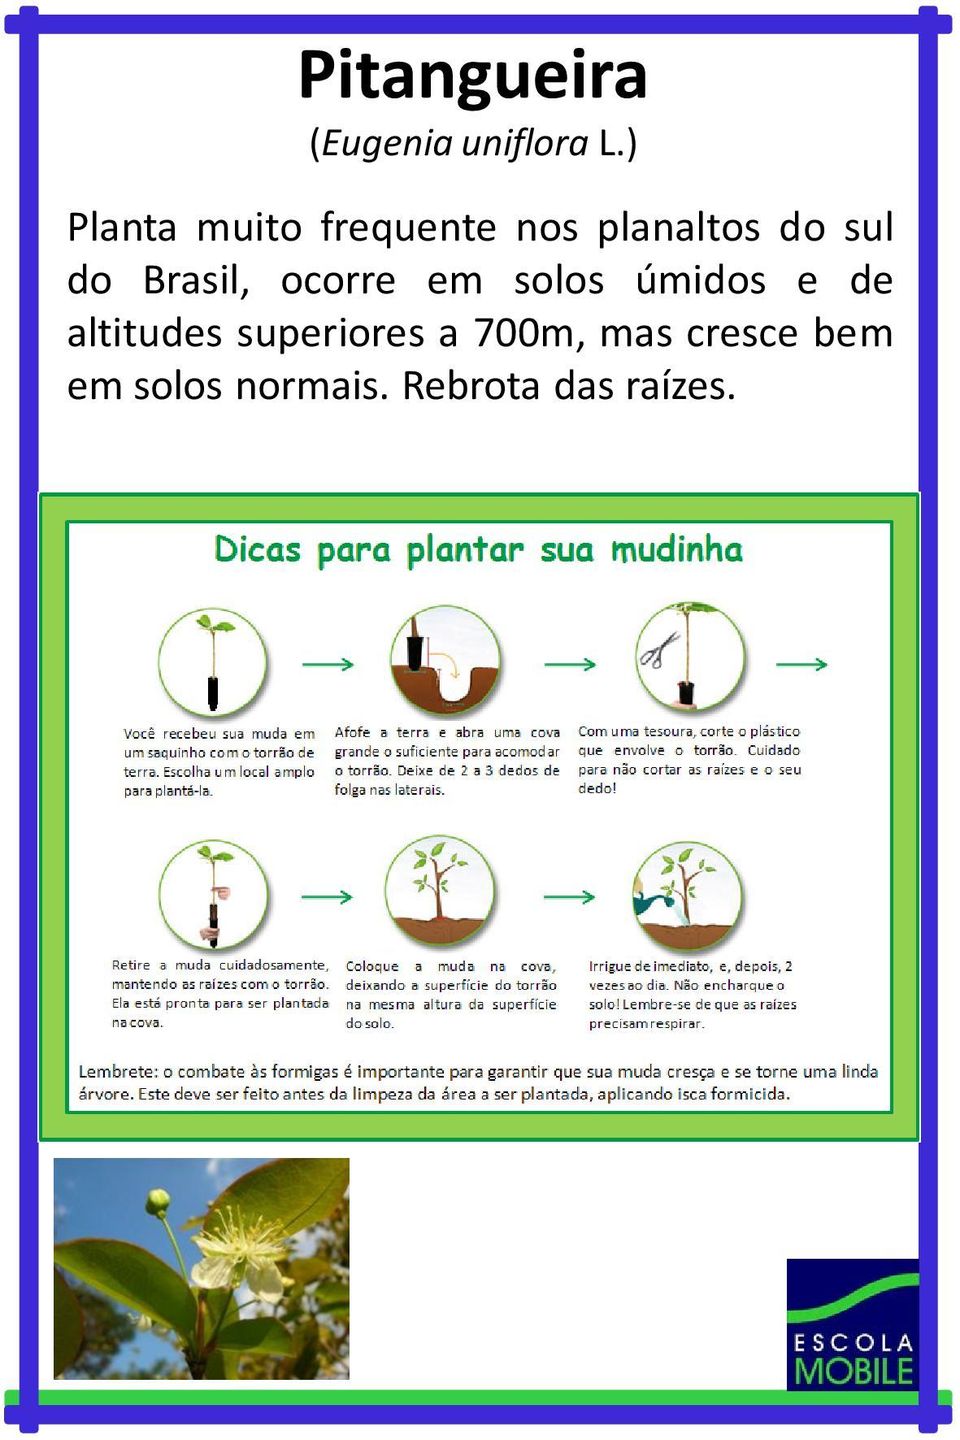 Brasil, ocorre em solos úmidos e de altitudes